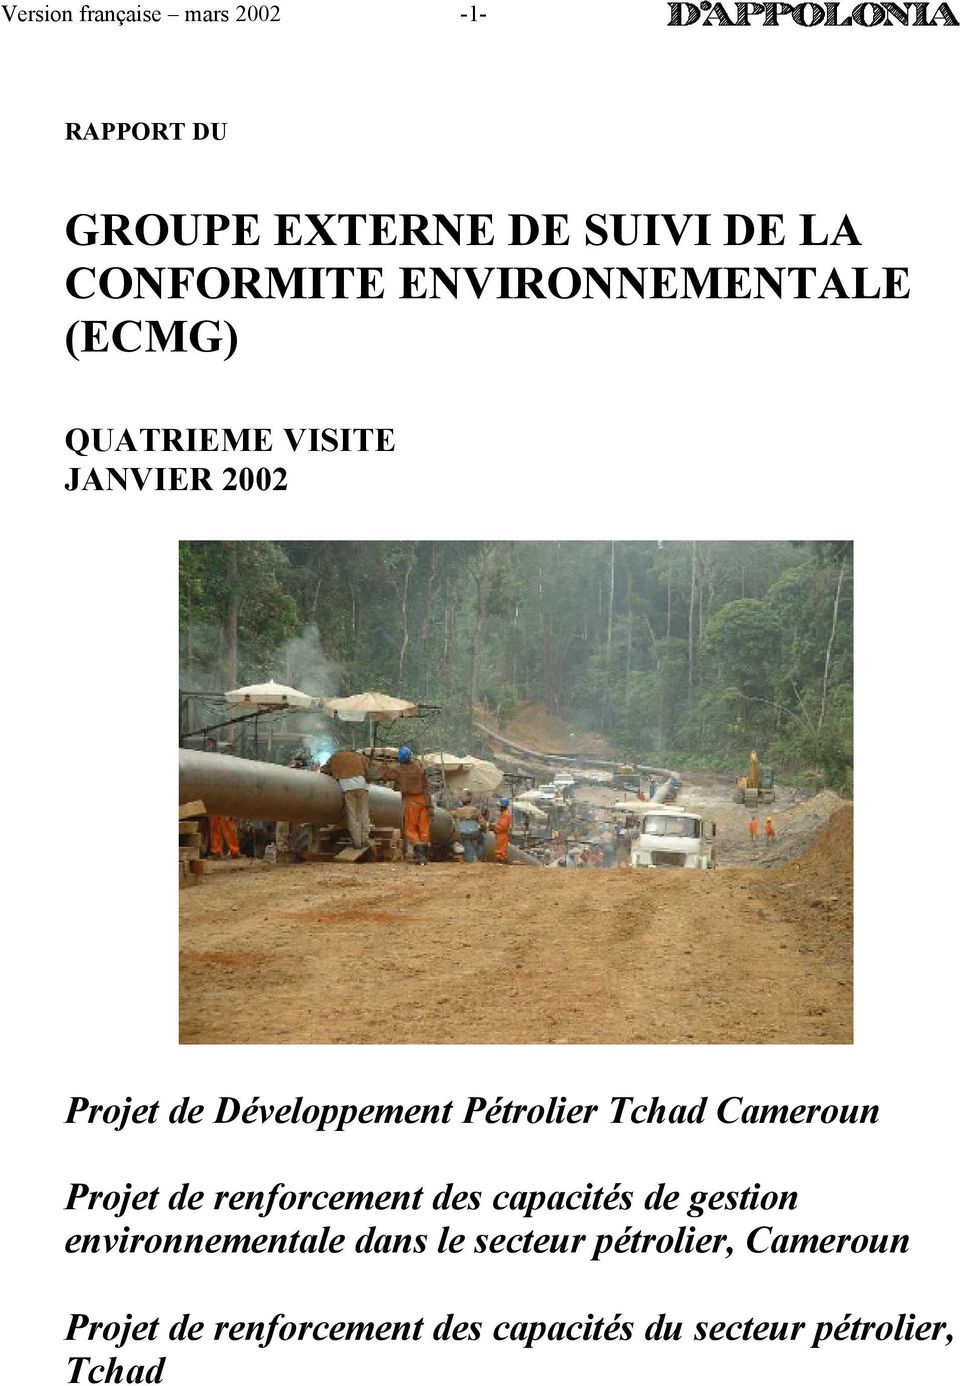 Pétrolier Tchad Cameroun Projet de renforcement des capacités de gestion environnementale